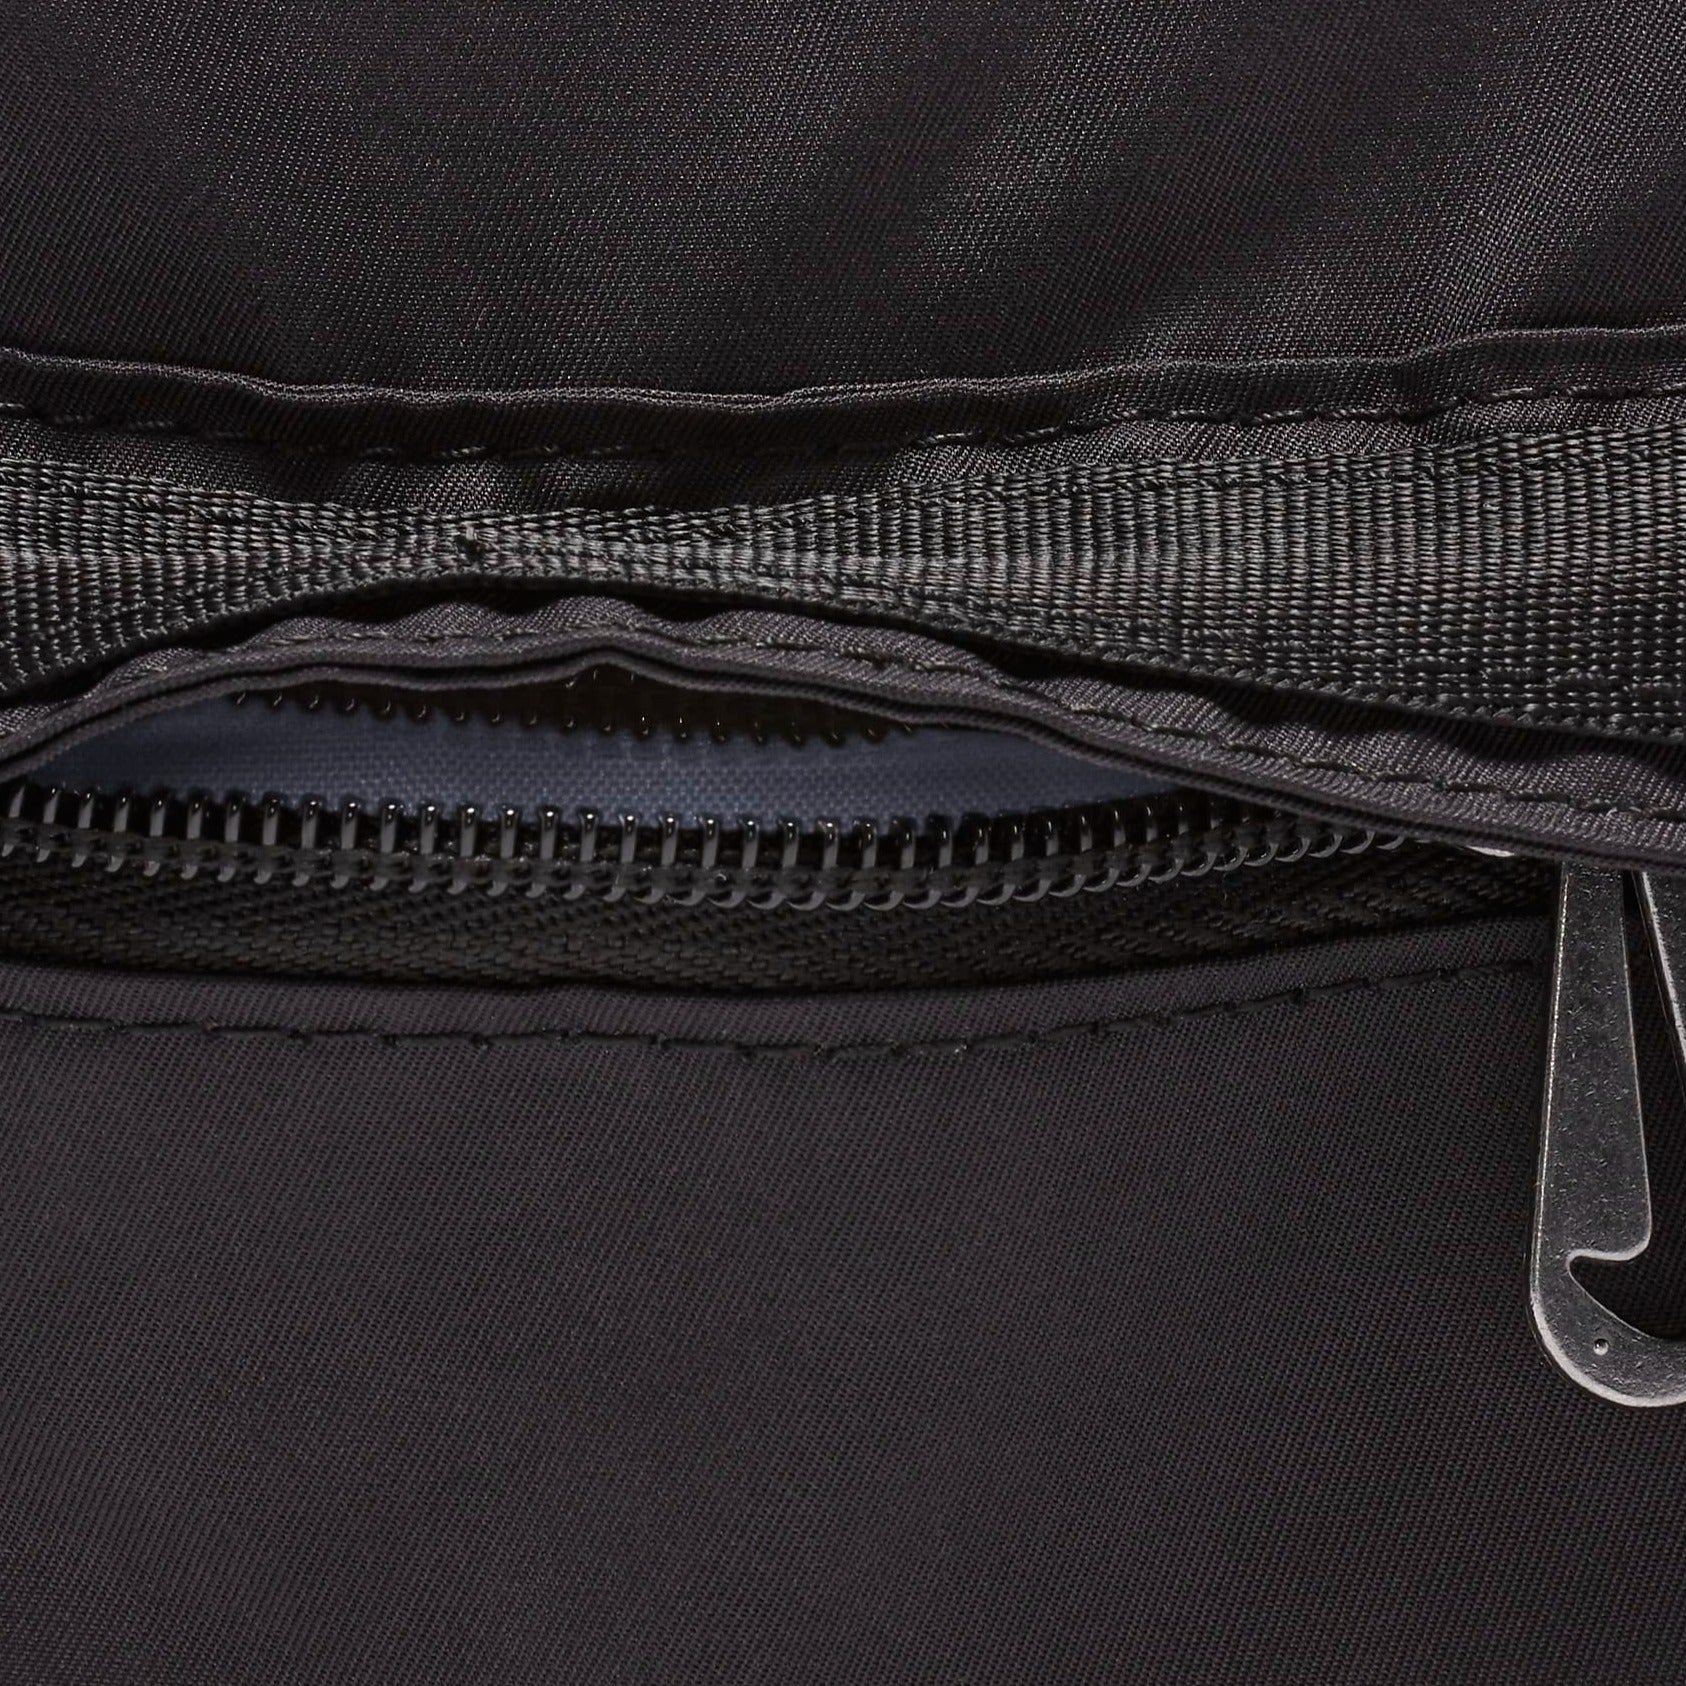 Nike Futura Luxe Body Bag (Black)(CW9304-010) – Trilogy Merch PH